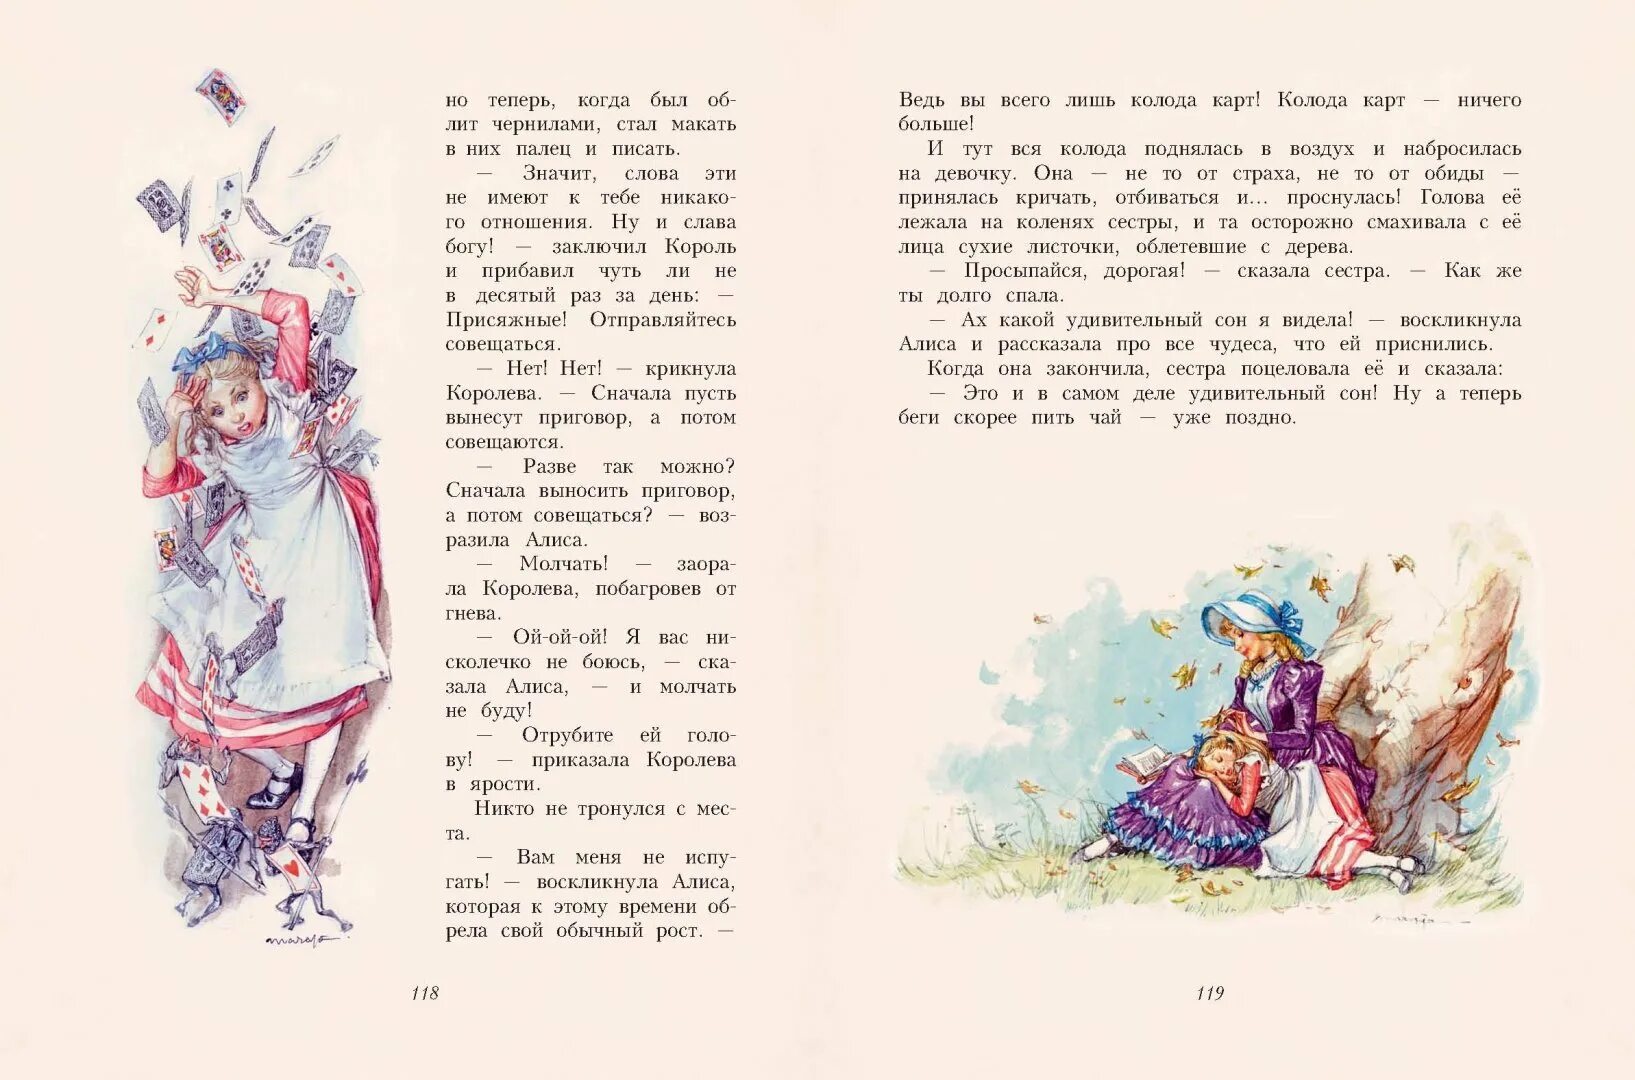 Отрывок о красной. Алиса в стране чудес Льюис Кэрролл книга. Иллюстрации к книгам. Алиса в стране чудес иллюстрации к книге. Алиса в стране чудес книга разворот.